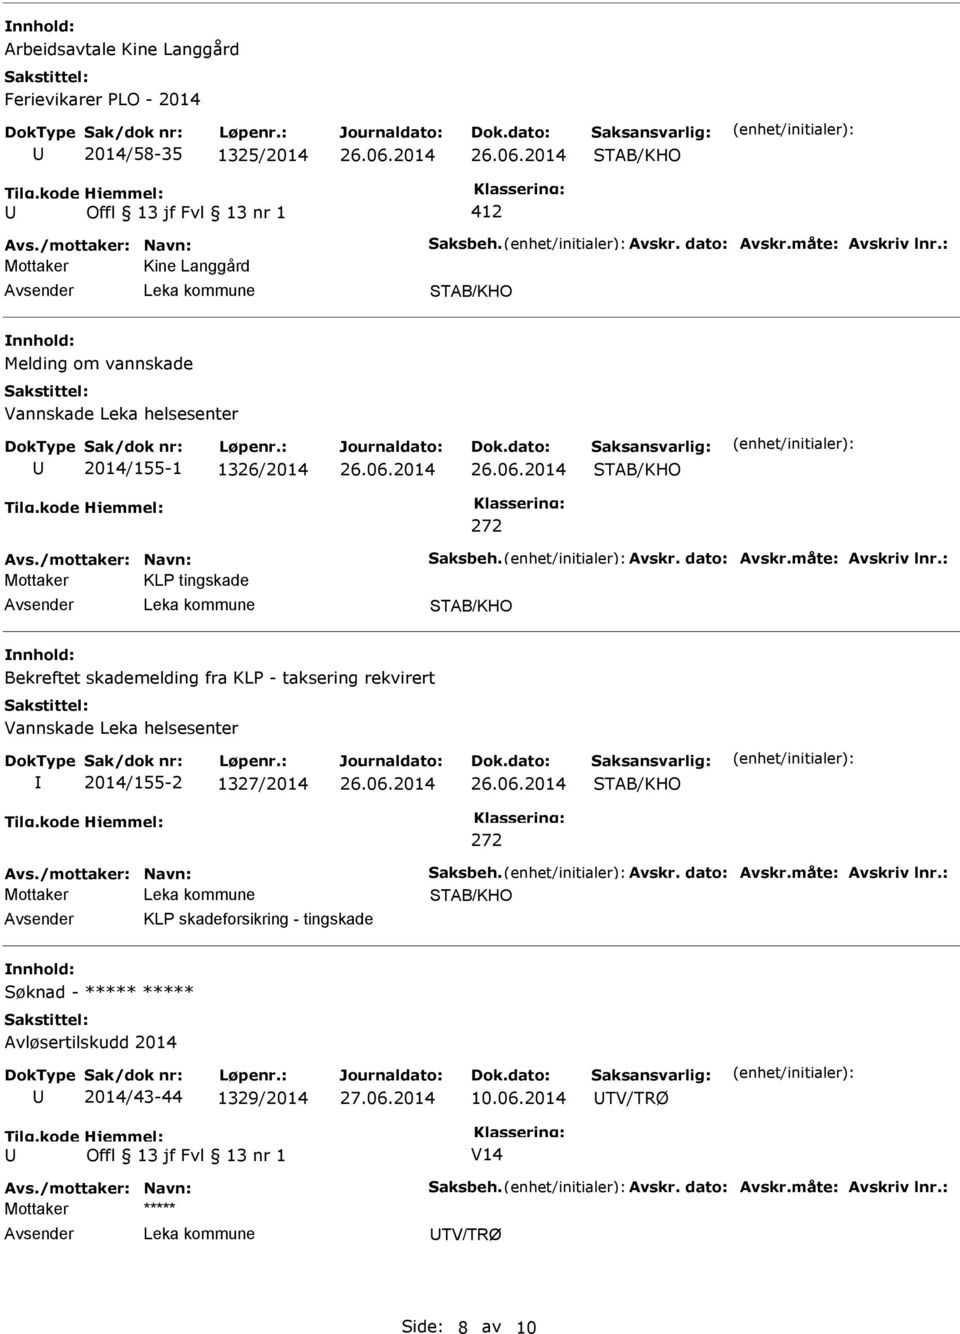 Bekreftet skademelding fra KLP - taksering rekvirert Vannskade Leka helsesenter 2014/155-2 1327/2014